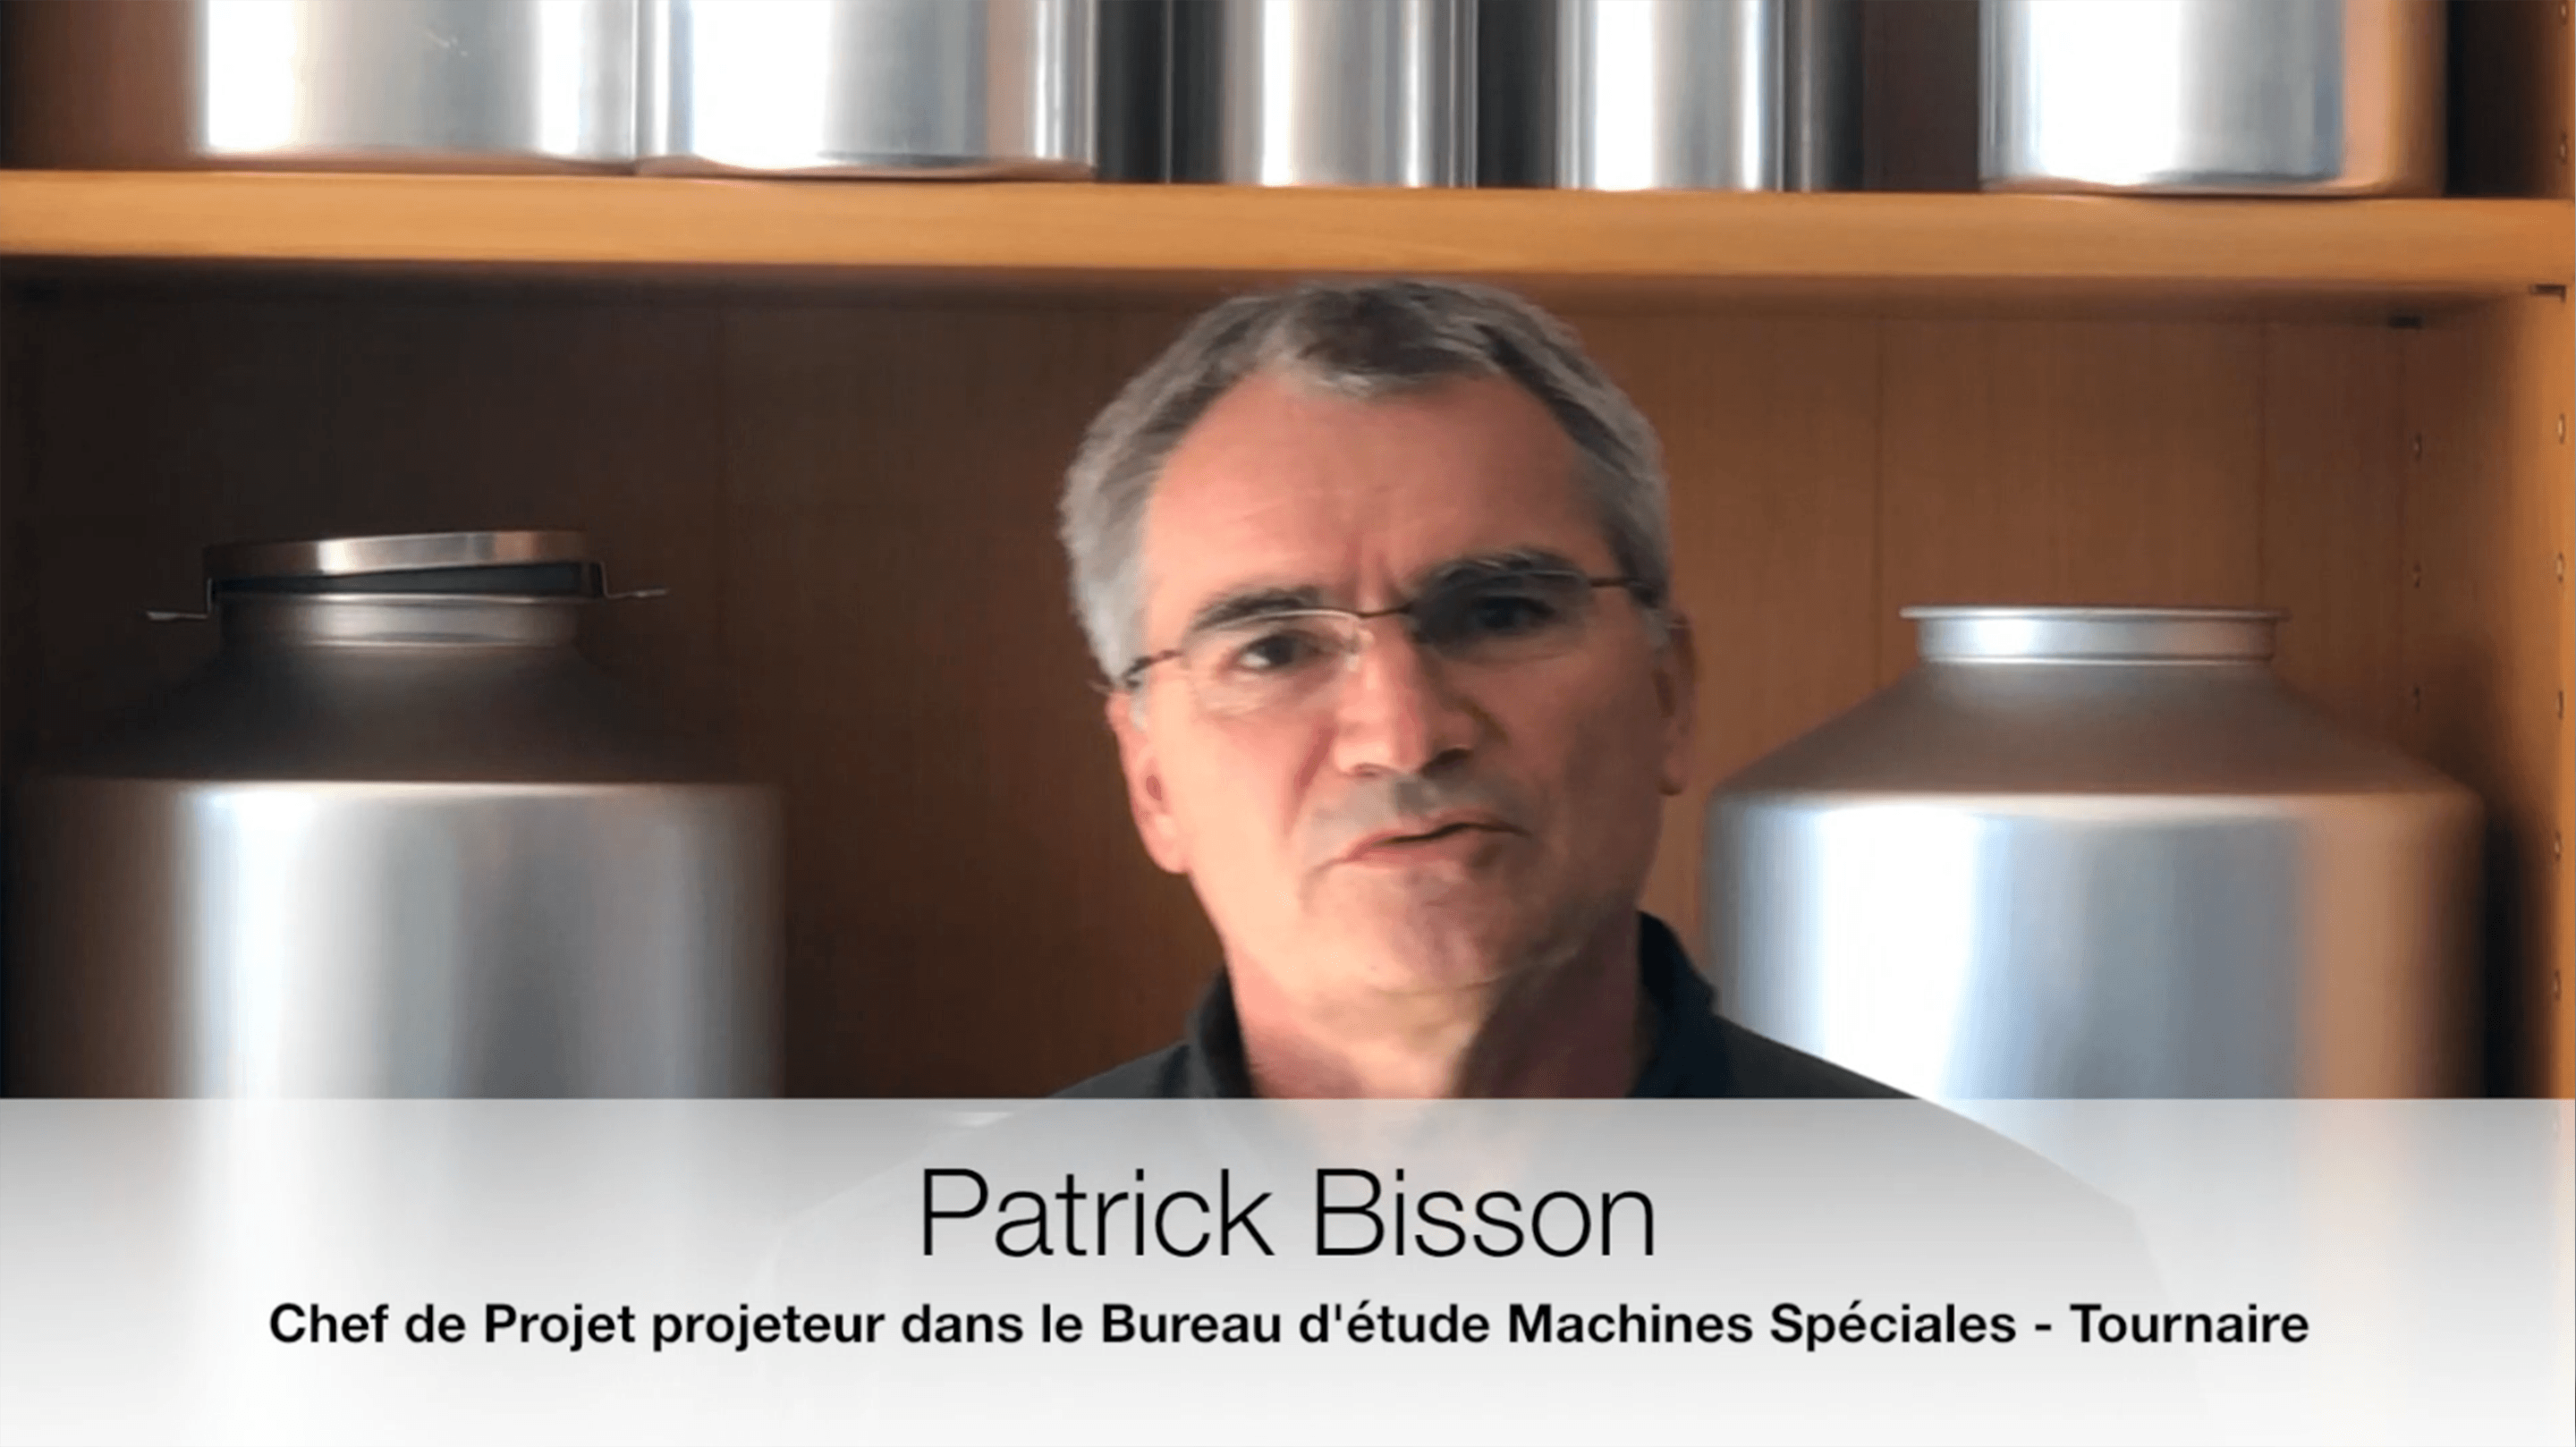 Témoignage, Patrick Bisson chef de projet et dessinateur/projeteur chez Tournaire depuis 30 ans.